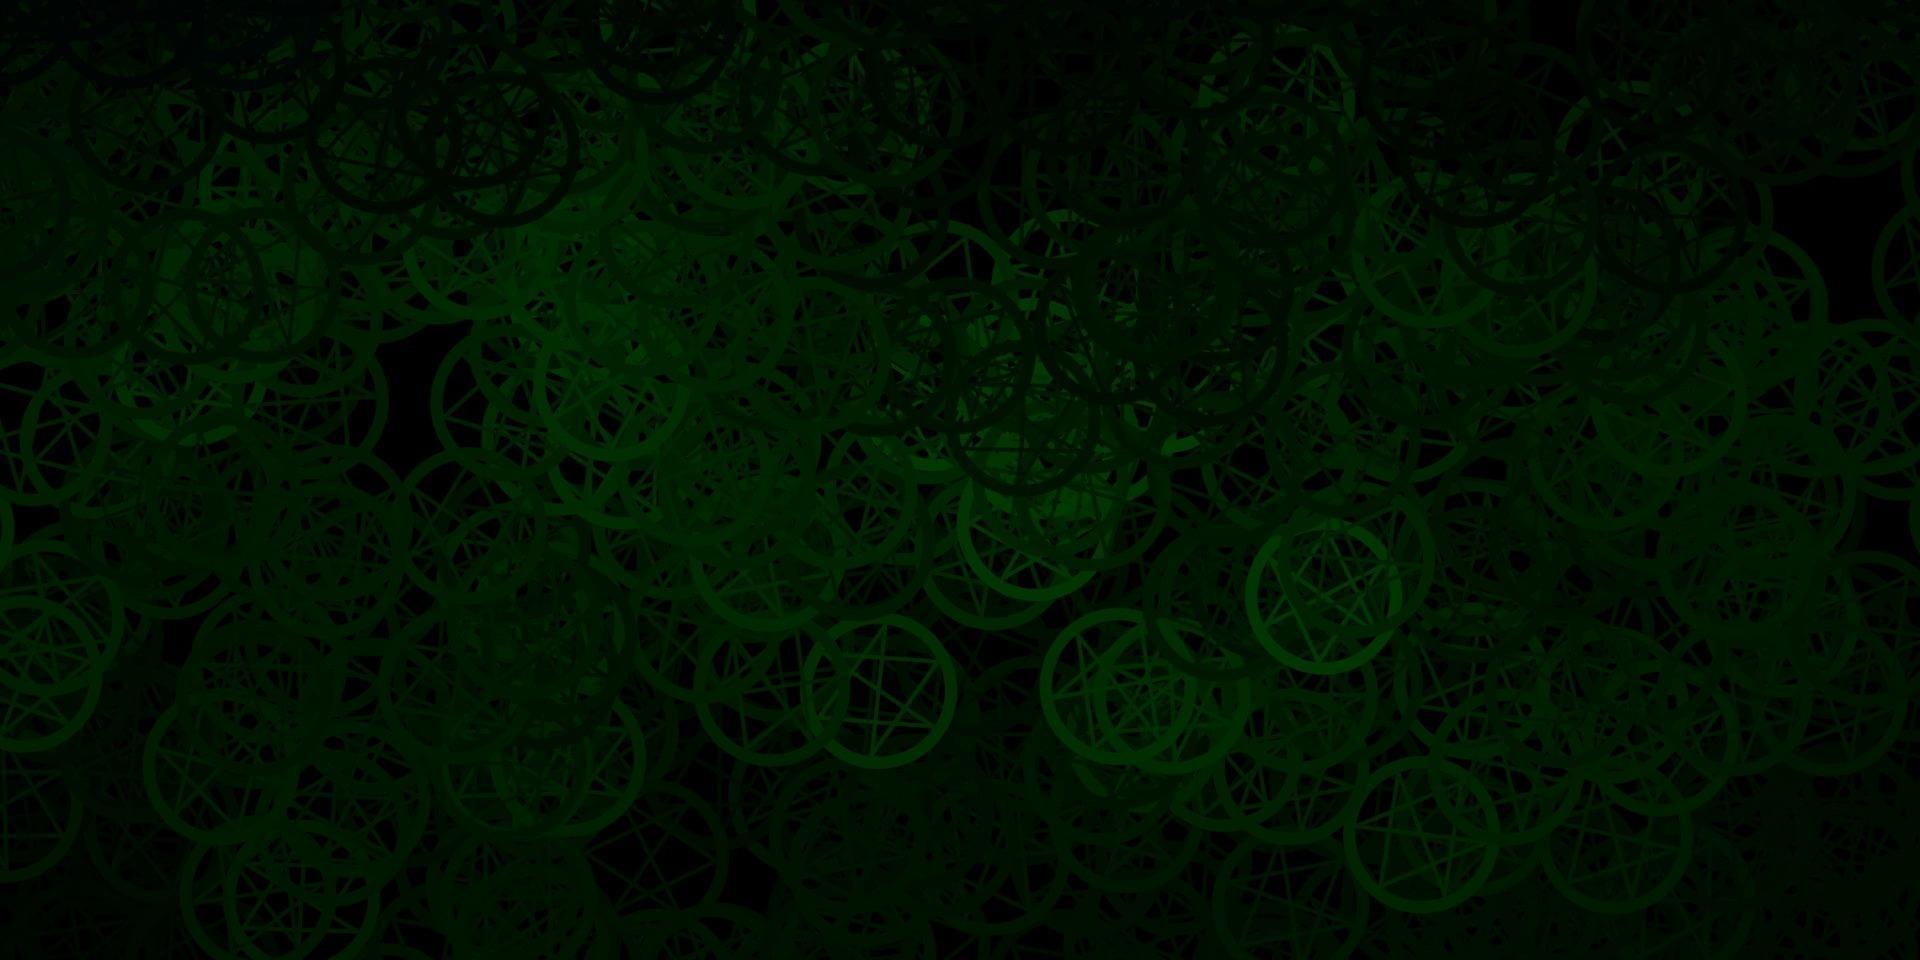 mörkgrön vektorbakgrund med ockulta symboler. vektor